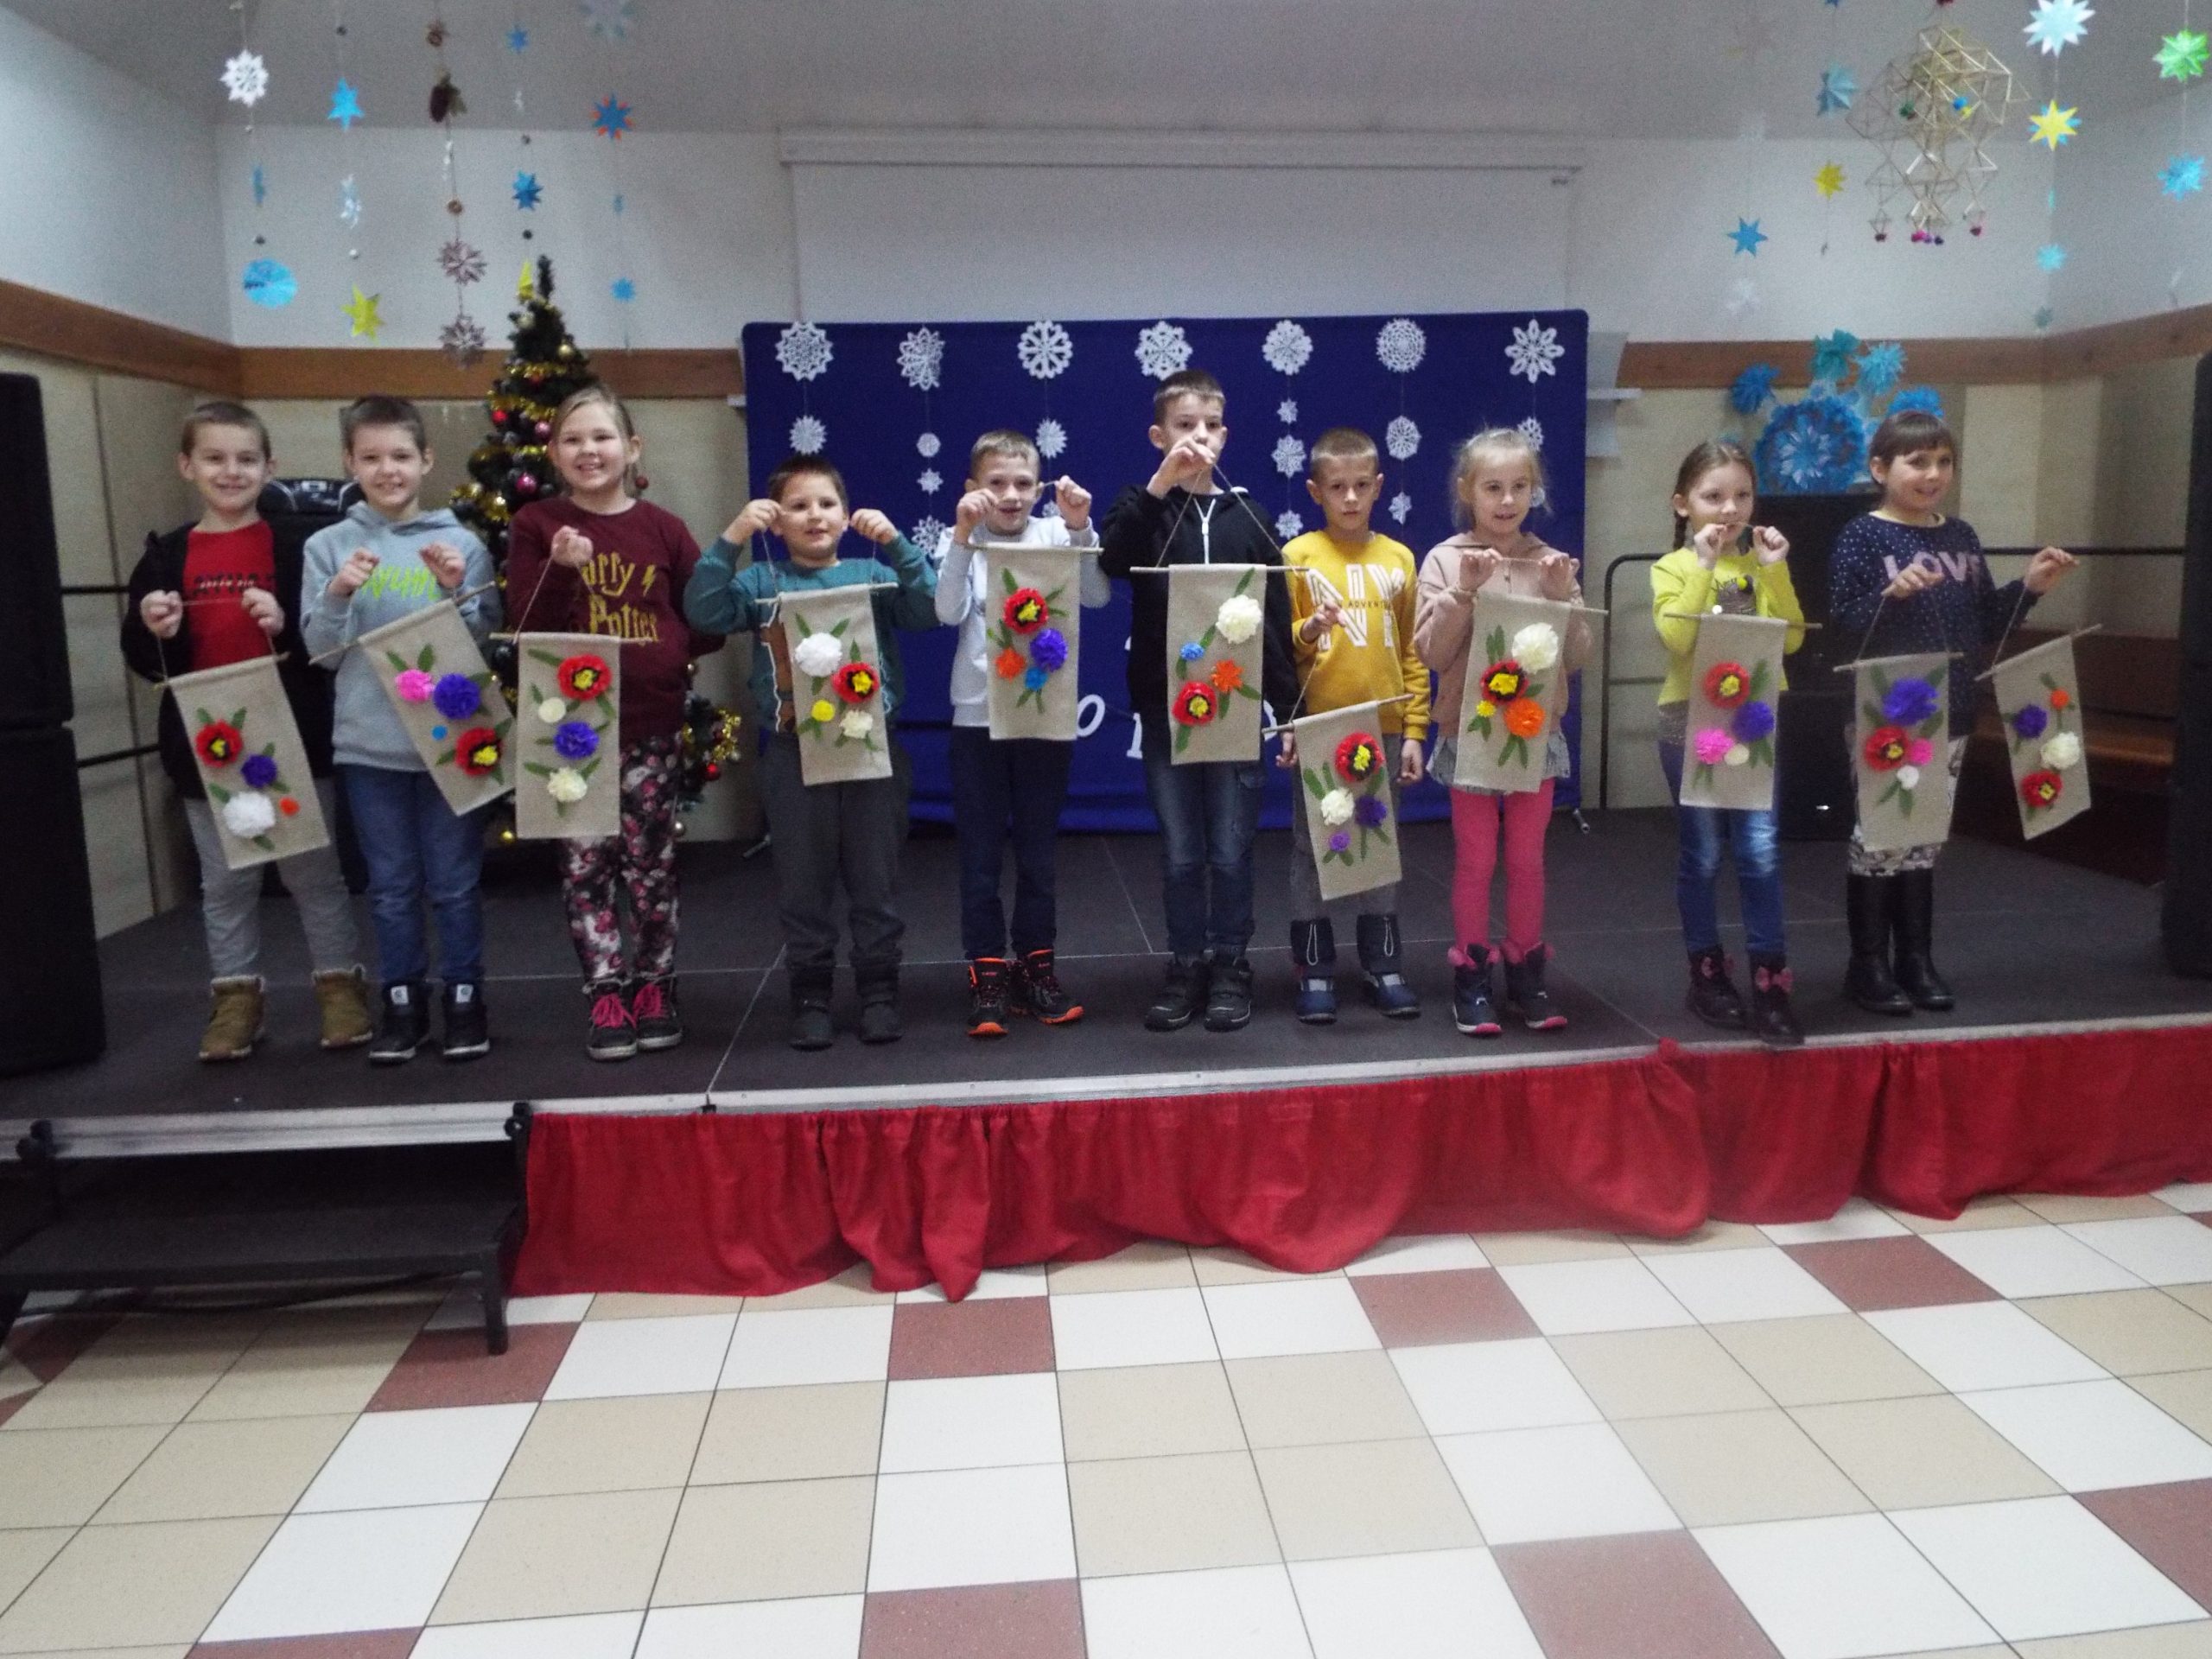 Grupa dzieci prezentuje własnoręcznie zrobione makatki.